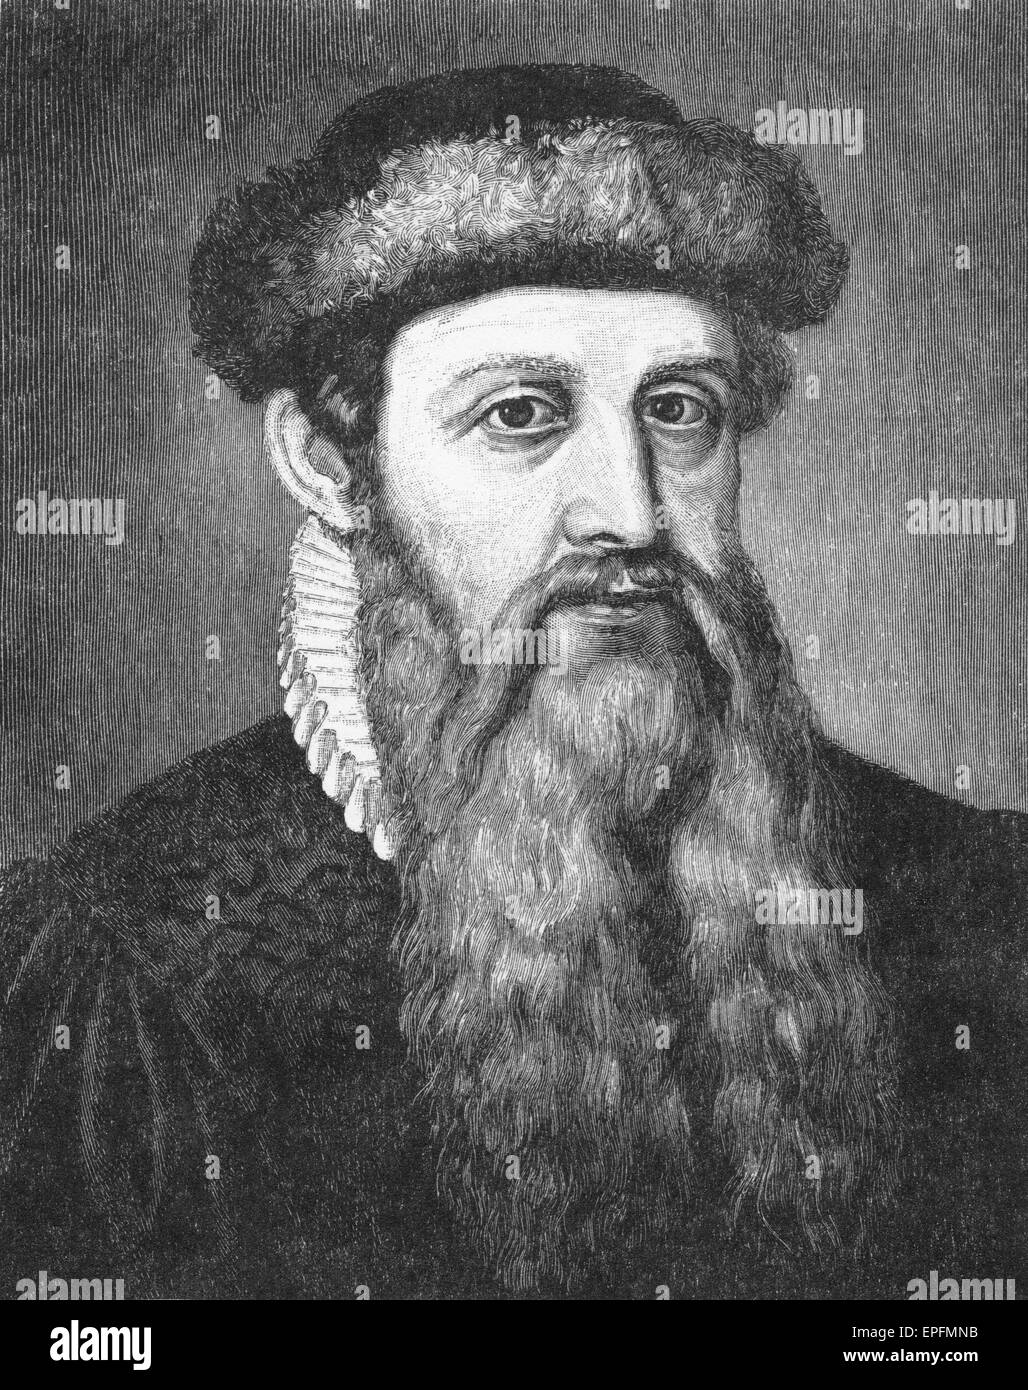 Johannes Gutenberg, c 1400 - 1468, inventor de la imprenta con tipos móviles de metal y la imprenta Foto de stock